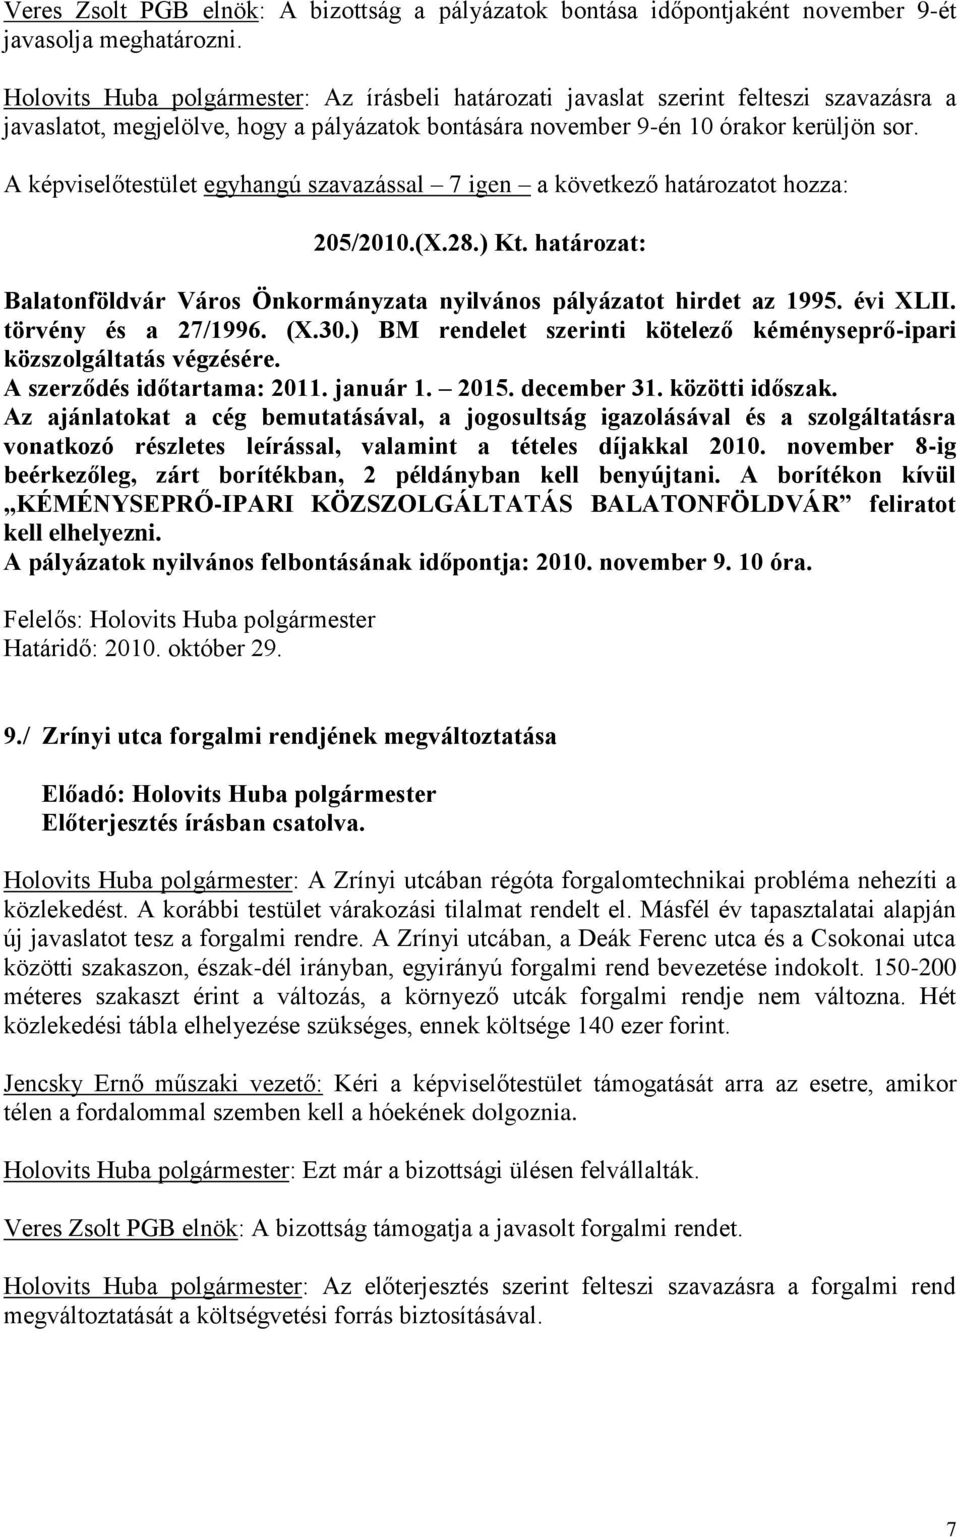 határozat: Balatonföldvár Város Önkormányzata nyilvános pályázatot hirdet az 1995. évi XLII. törvény és a 27/1996. (X.30.) BM rendelet szerinti kötelező kéményseprő-ipari közszolgáltatás végzésére.